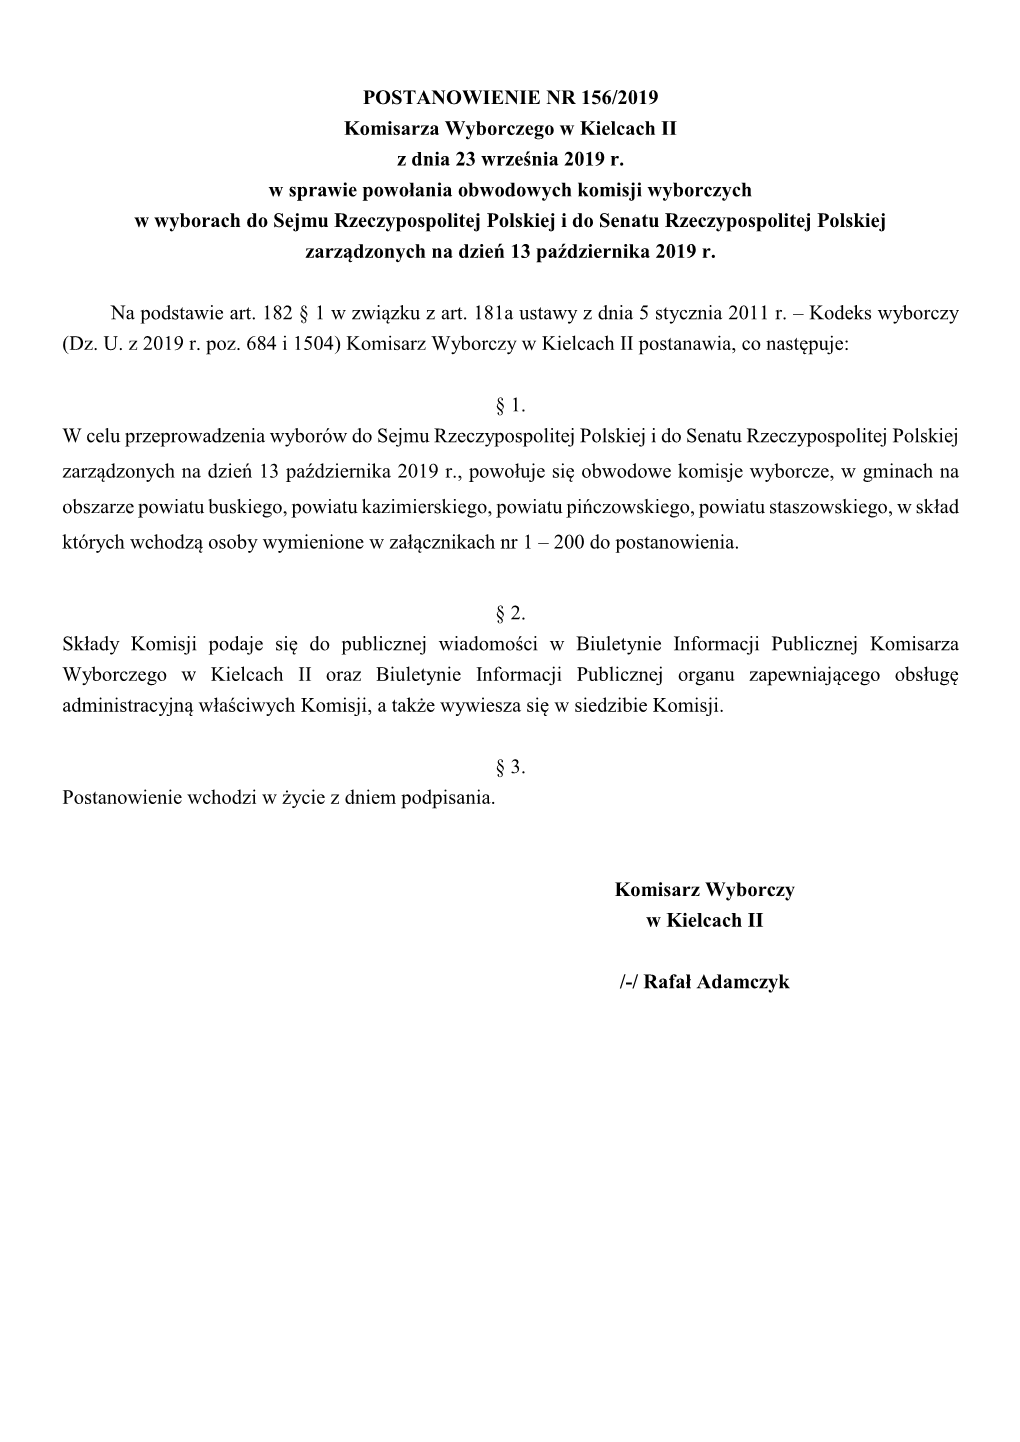 POSTANOWIENIE NR 156/2019 Komisarza Wyborczego W Kielcach II Z Dnia 23 Września 2019 R